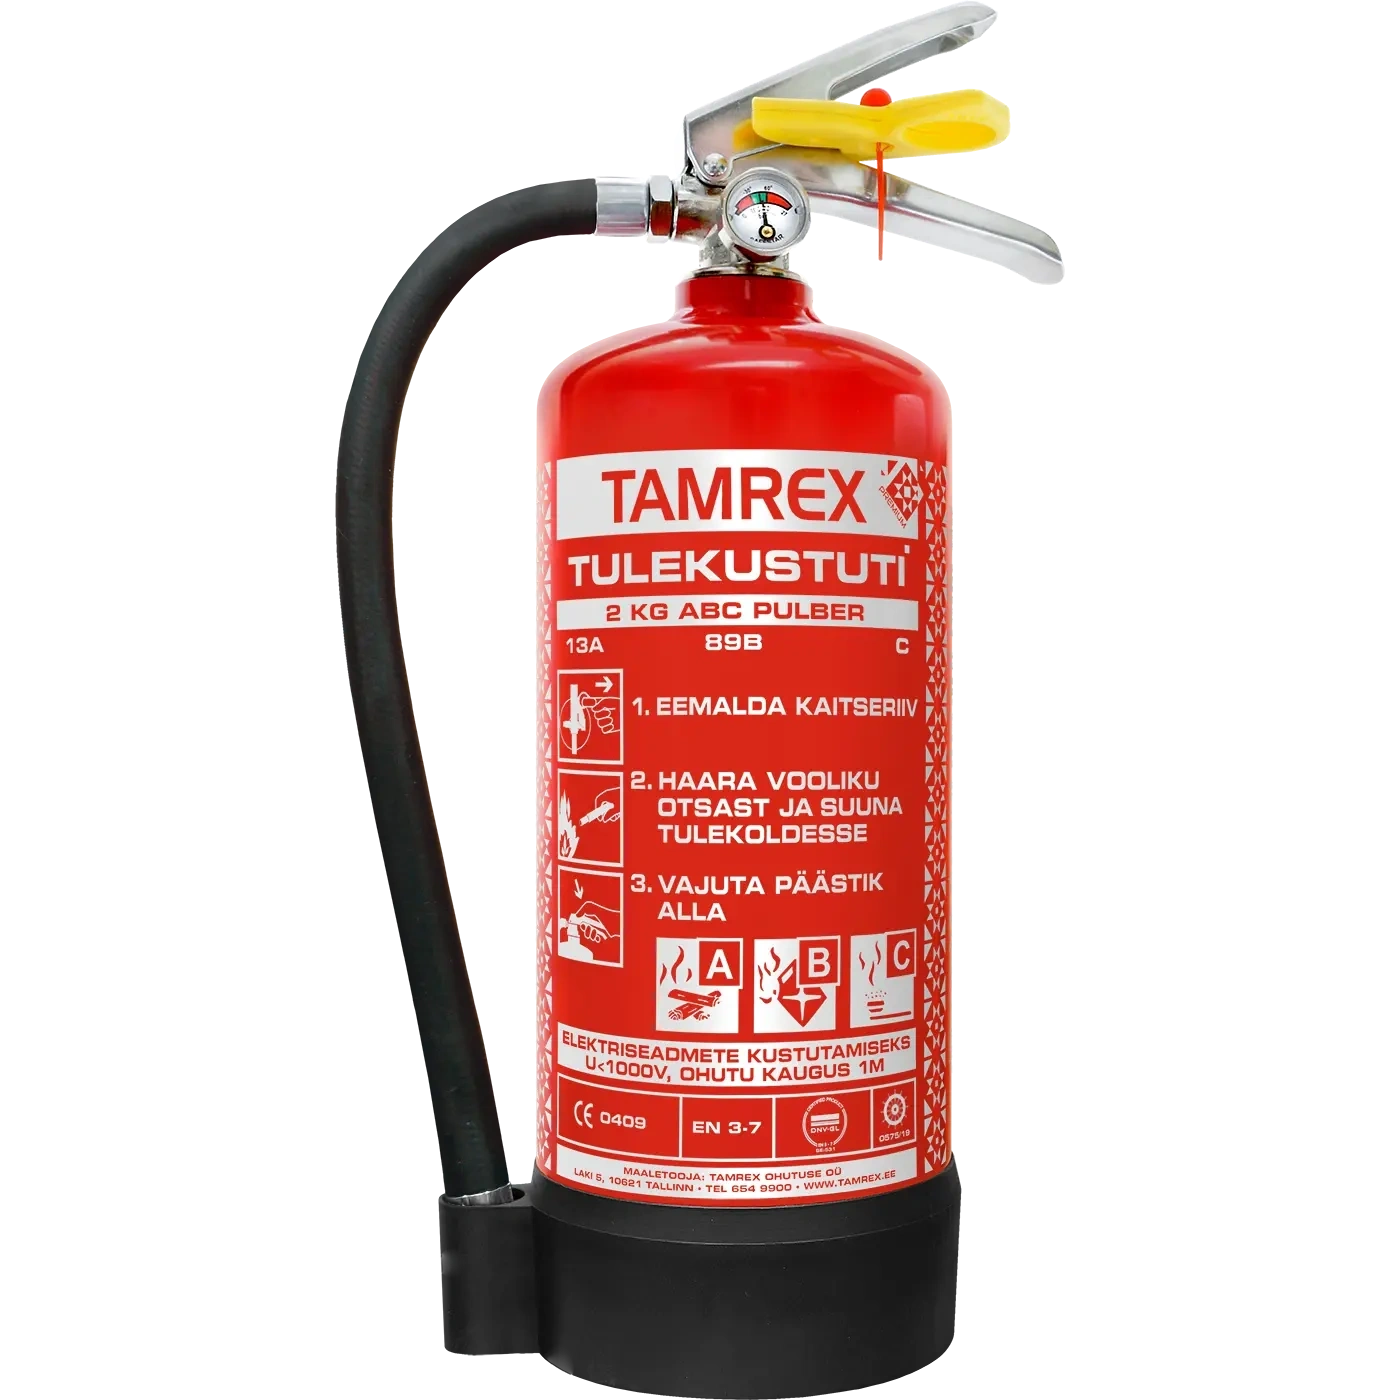 TAMREX 2 kg Premium pulberkustuti voolikuga (13A-89B-C)